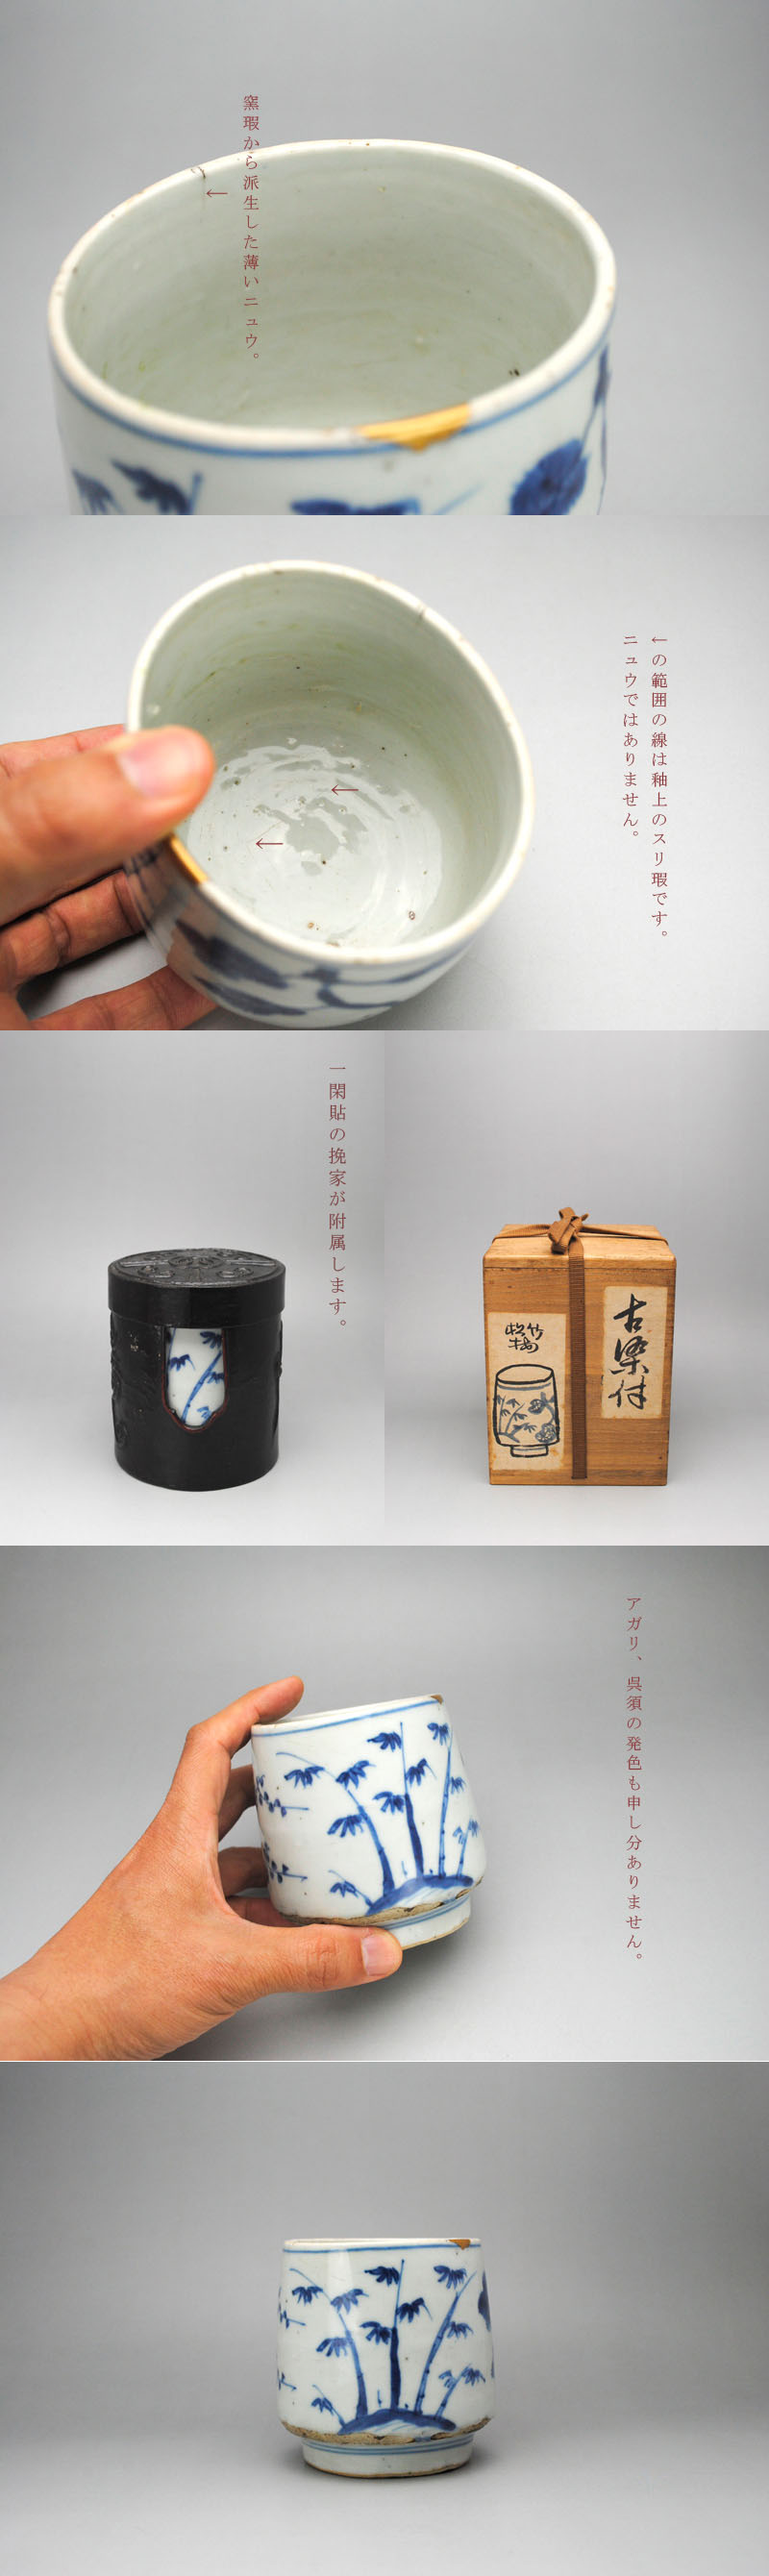 中上 ///NAKAGAMI - 古染付 松竹梅図筒茶碗 | 古美術品専門サイト